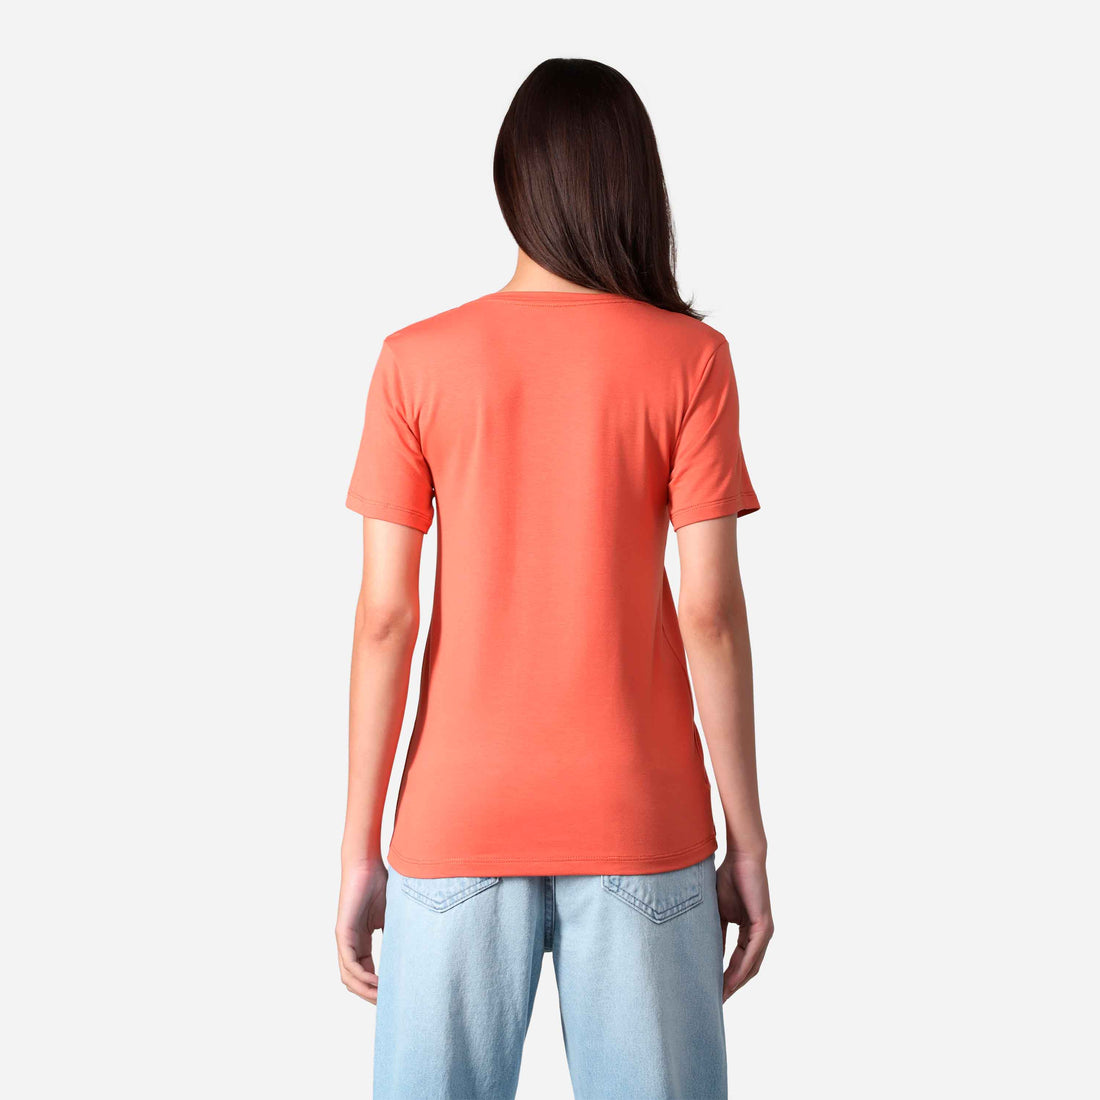 Camiseta Algodão Premium Gola V Feminina | Everyday Collection - Marrom Telha